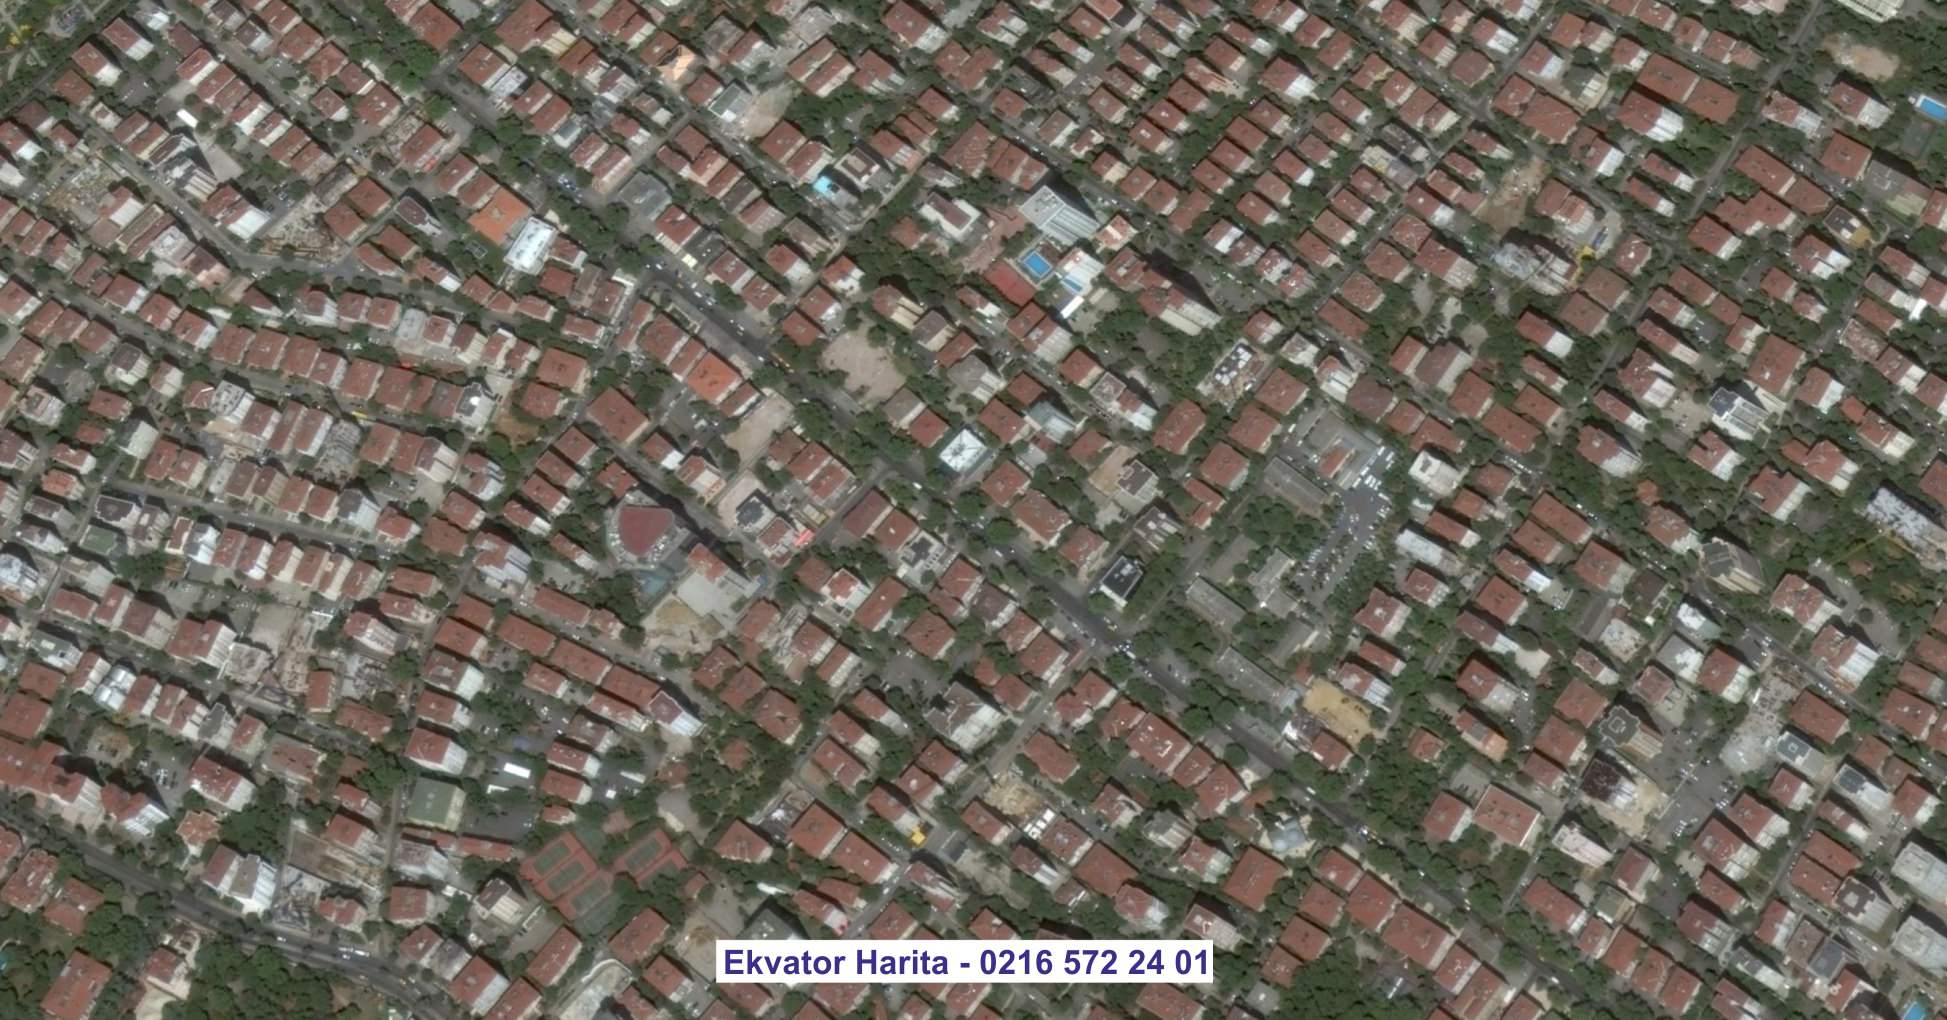 Etlik Uydu Görüntüsü Örnek Fotoğrafı